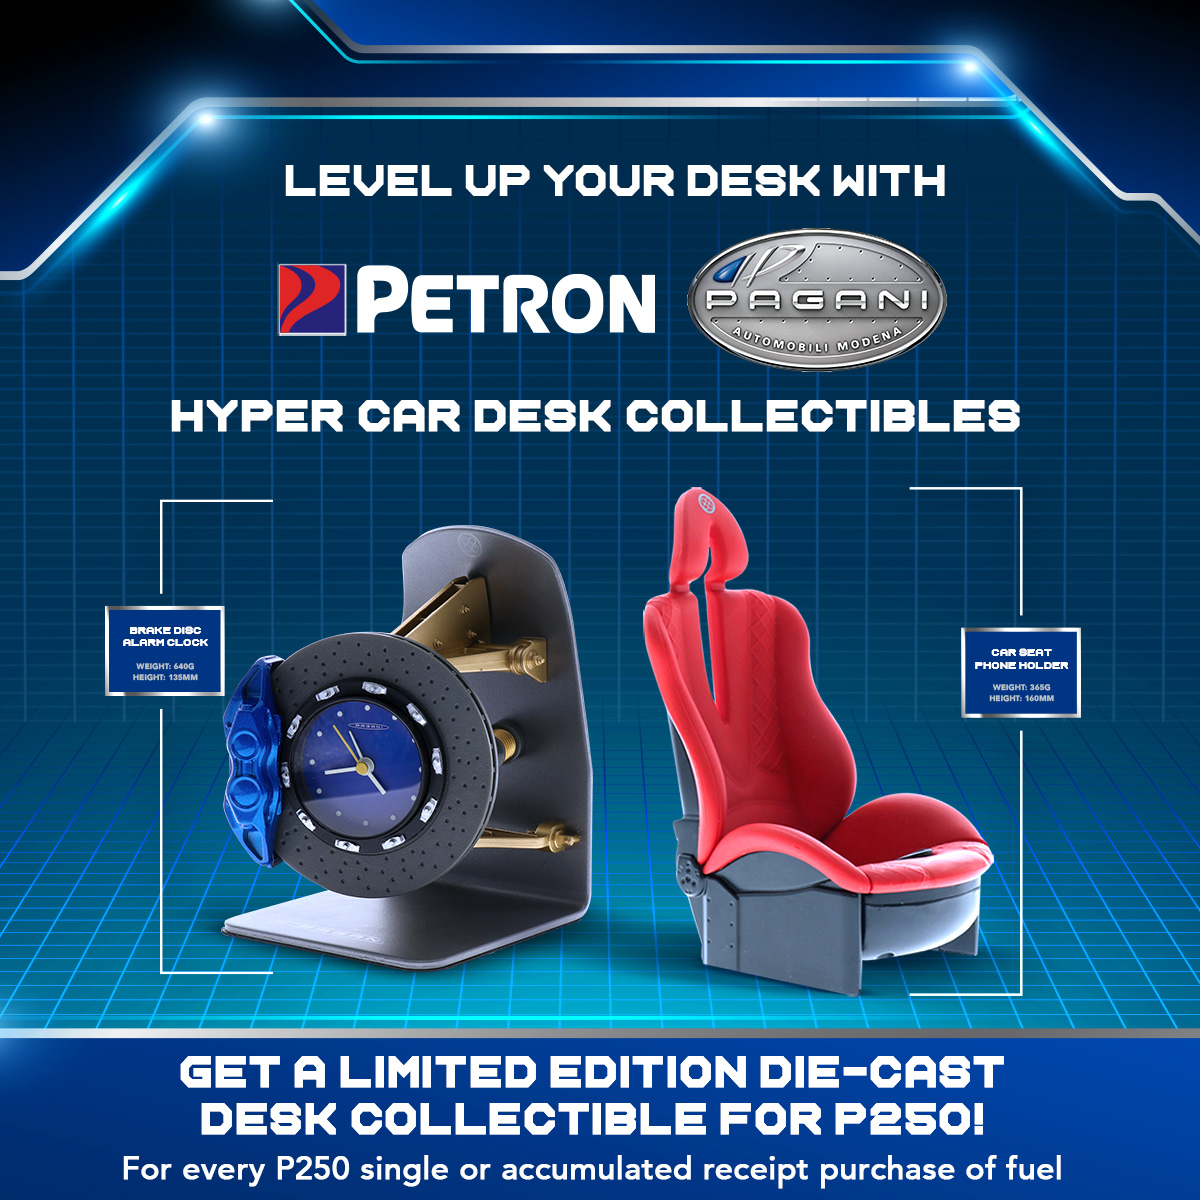 EXTENDED: Petron Pagani Hypercar Desk Collectible (September 15-November 16, 2019)